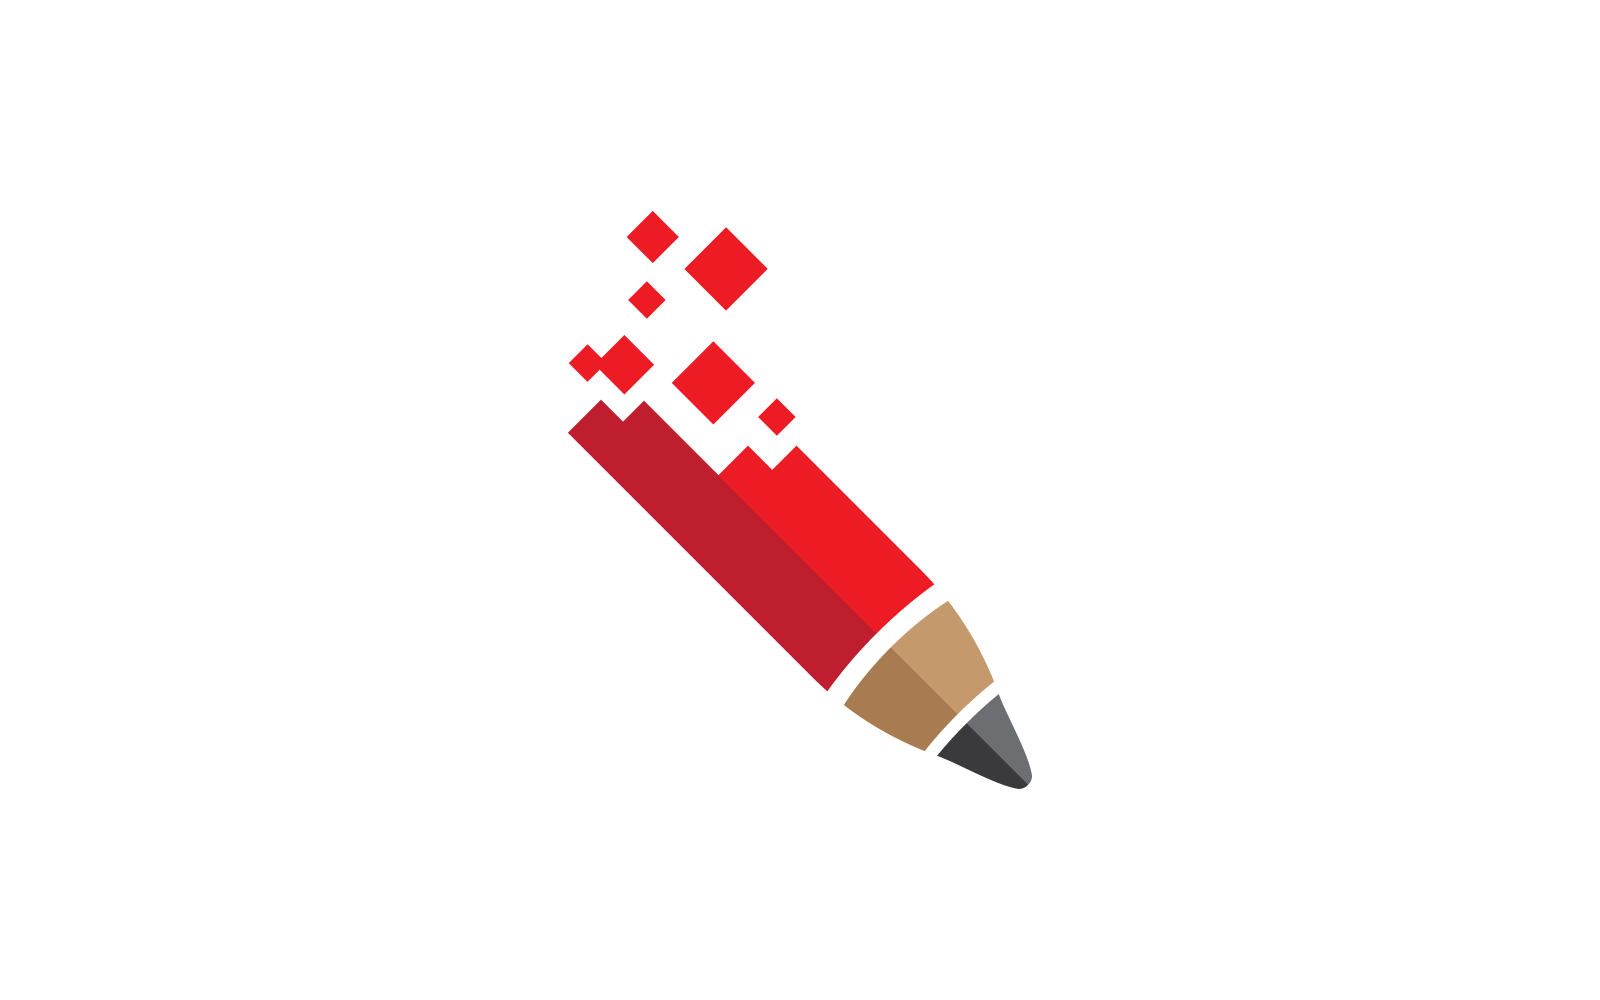 Digital pencil logo illustration vector flat design